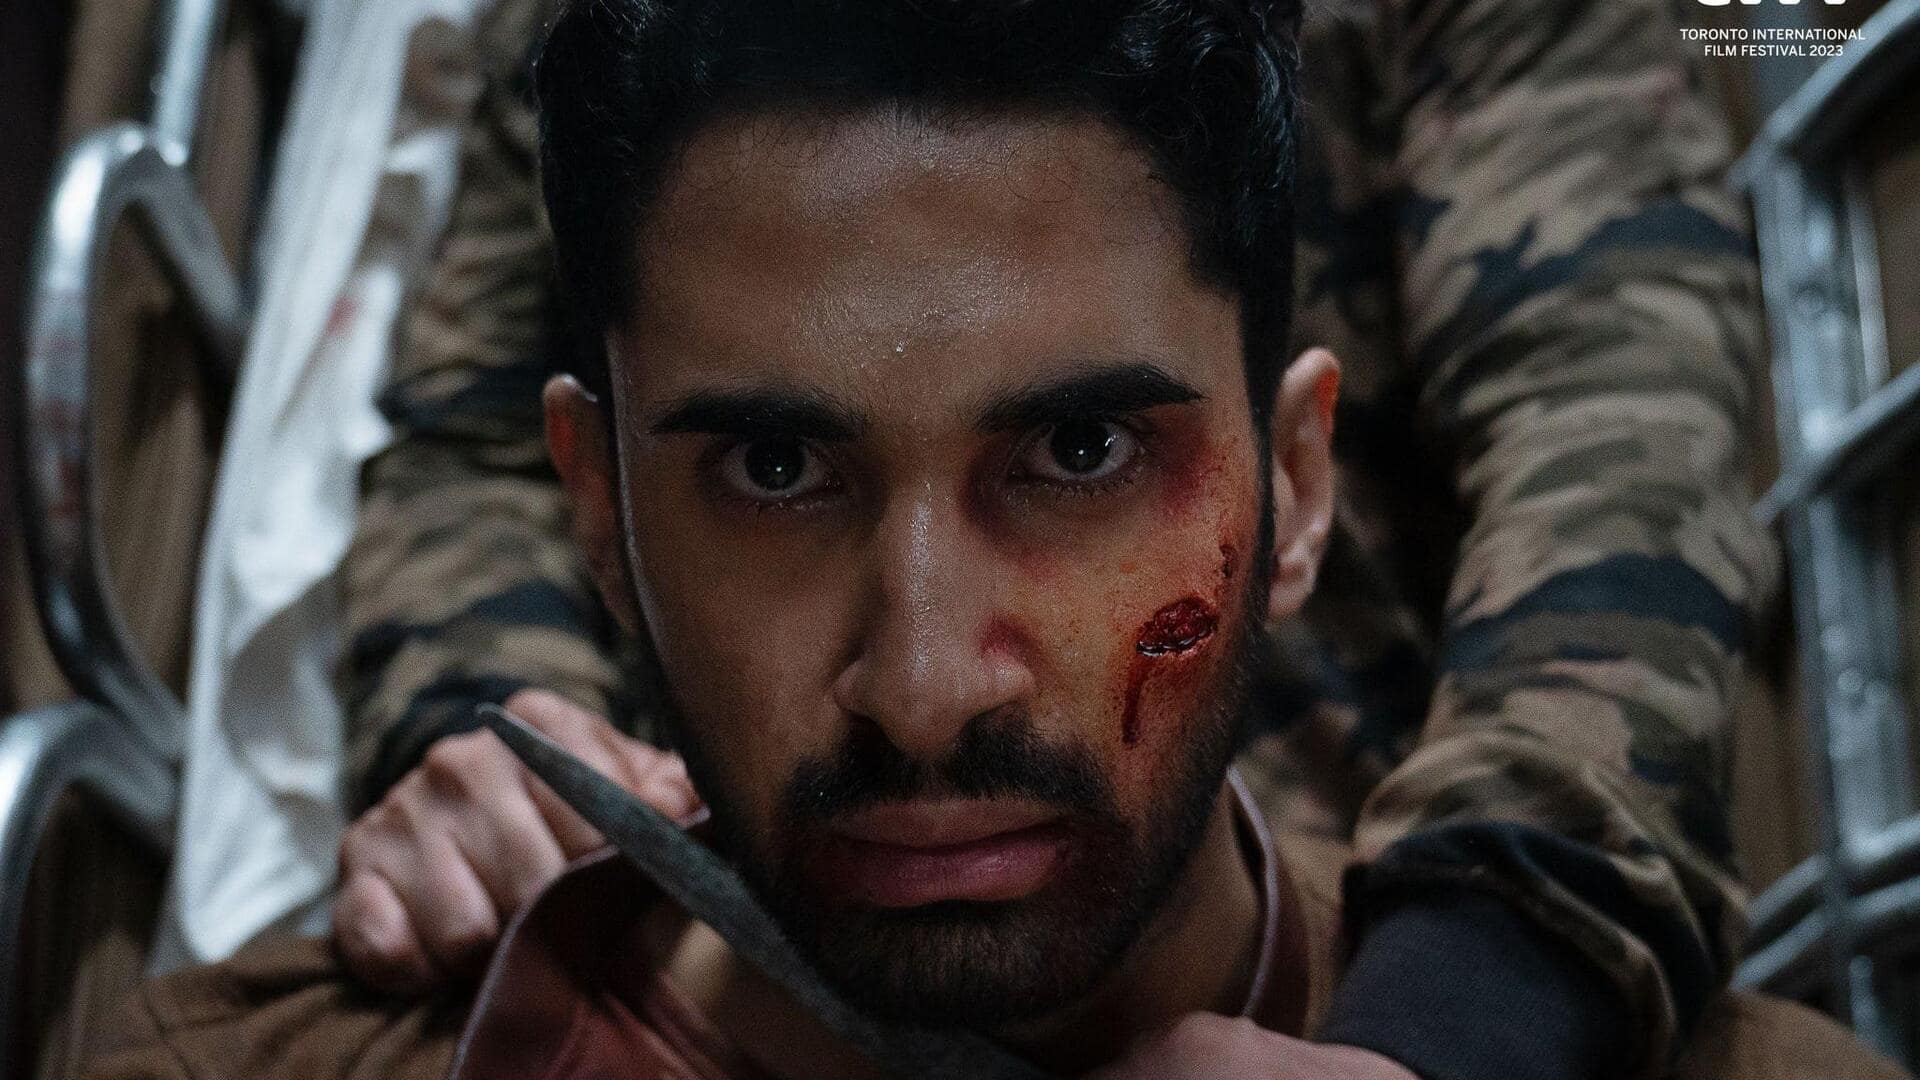 Karan Johar's 'Kill' to premiere at TIFF: Cast, crew, genre